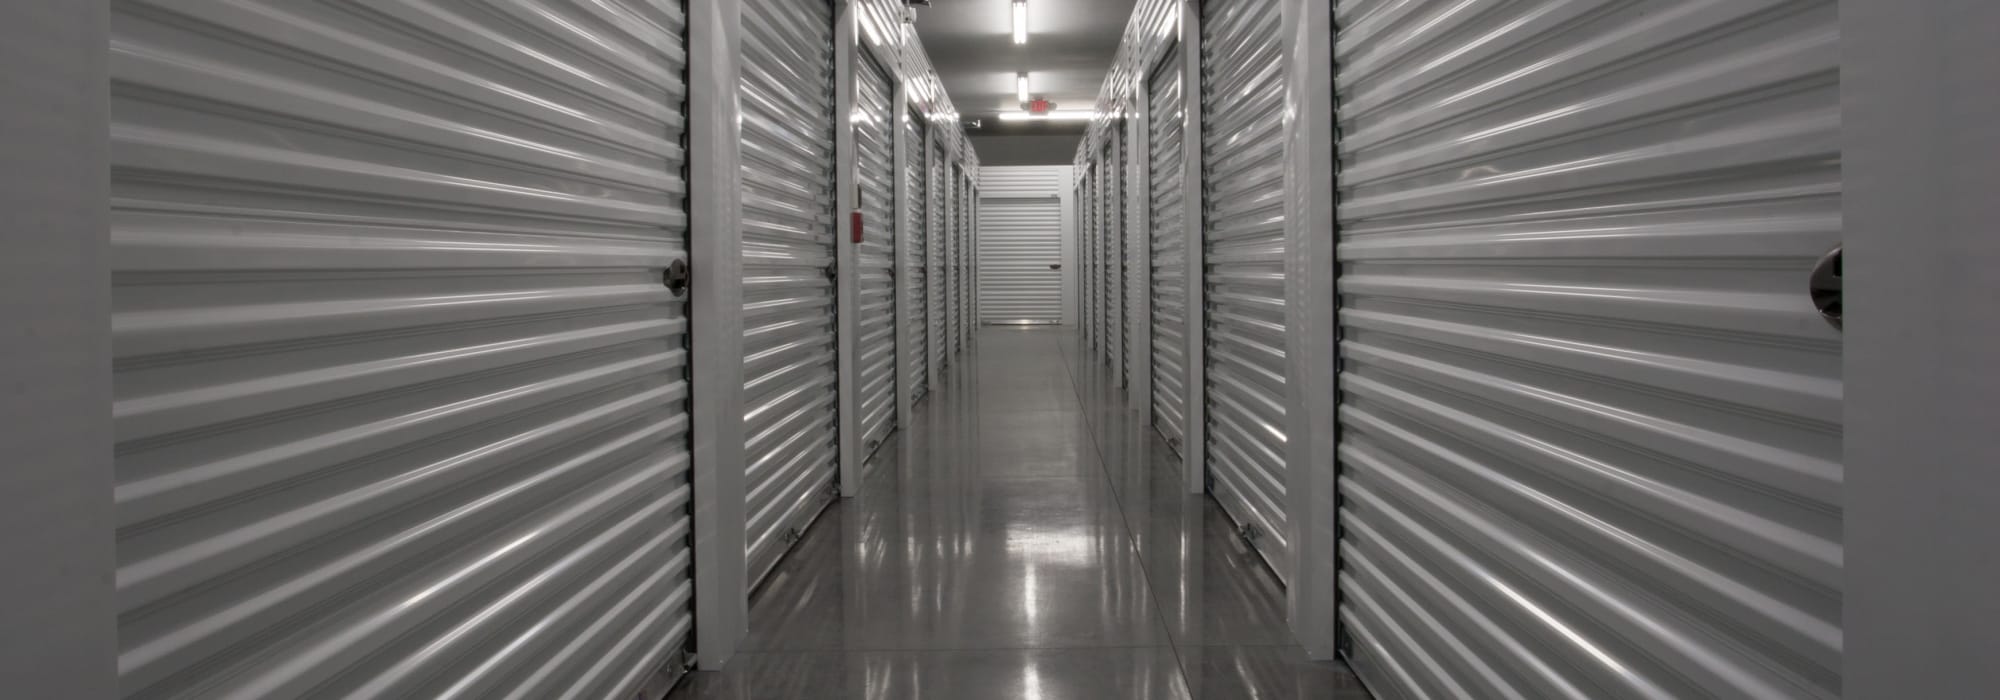 Self storage at Fieldstown Road Self Storage in Mount Olive, Alabama